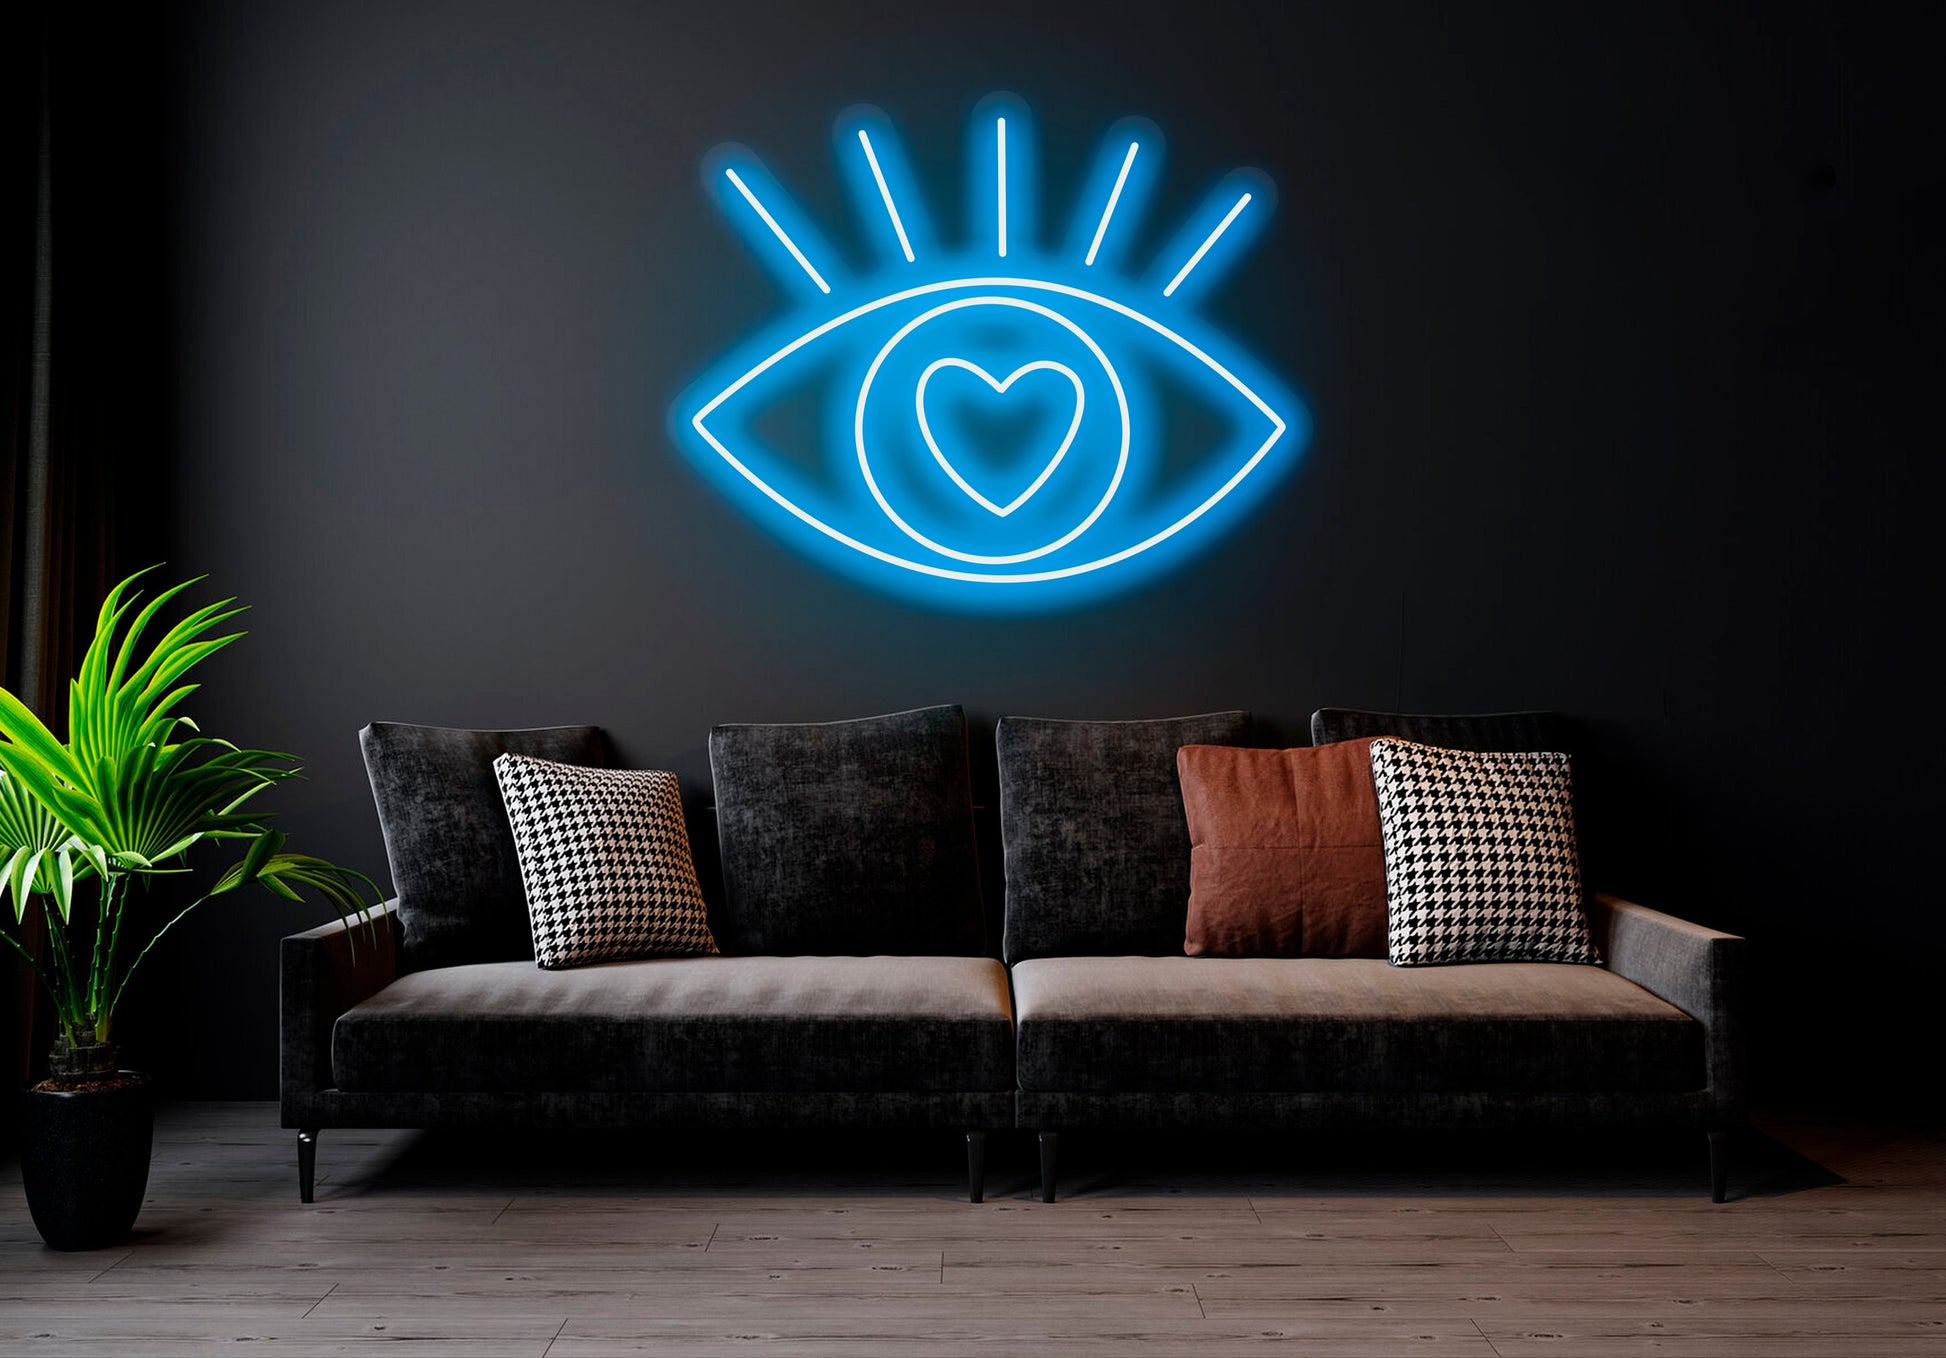 Eye- LED Neon Sign , Home Interior Decor, Neon Lights, Bedroom neon sign, Neon sign wall decor